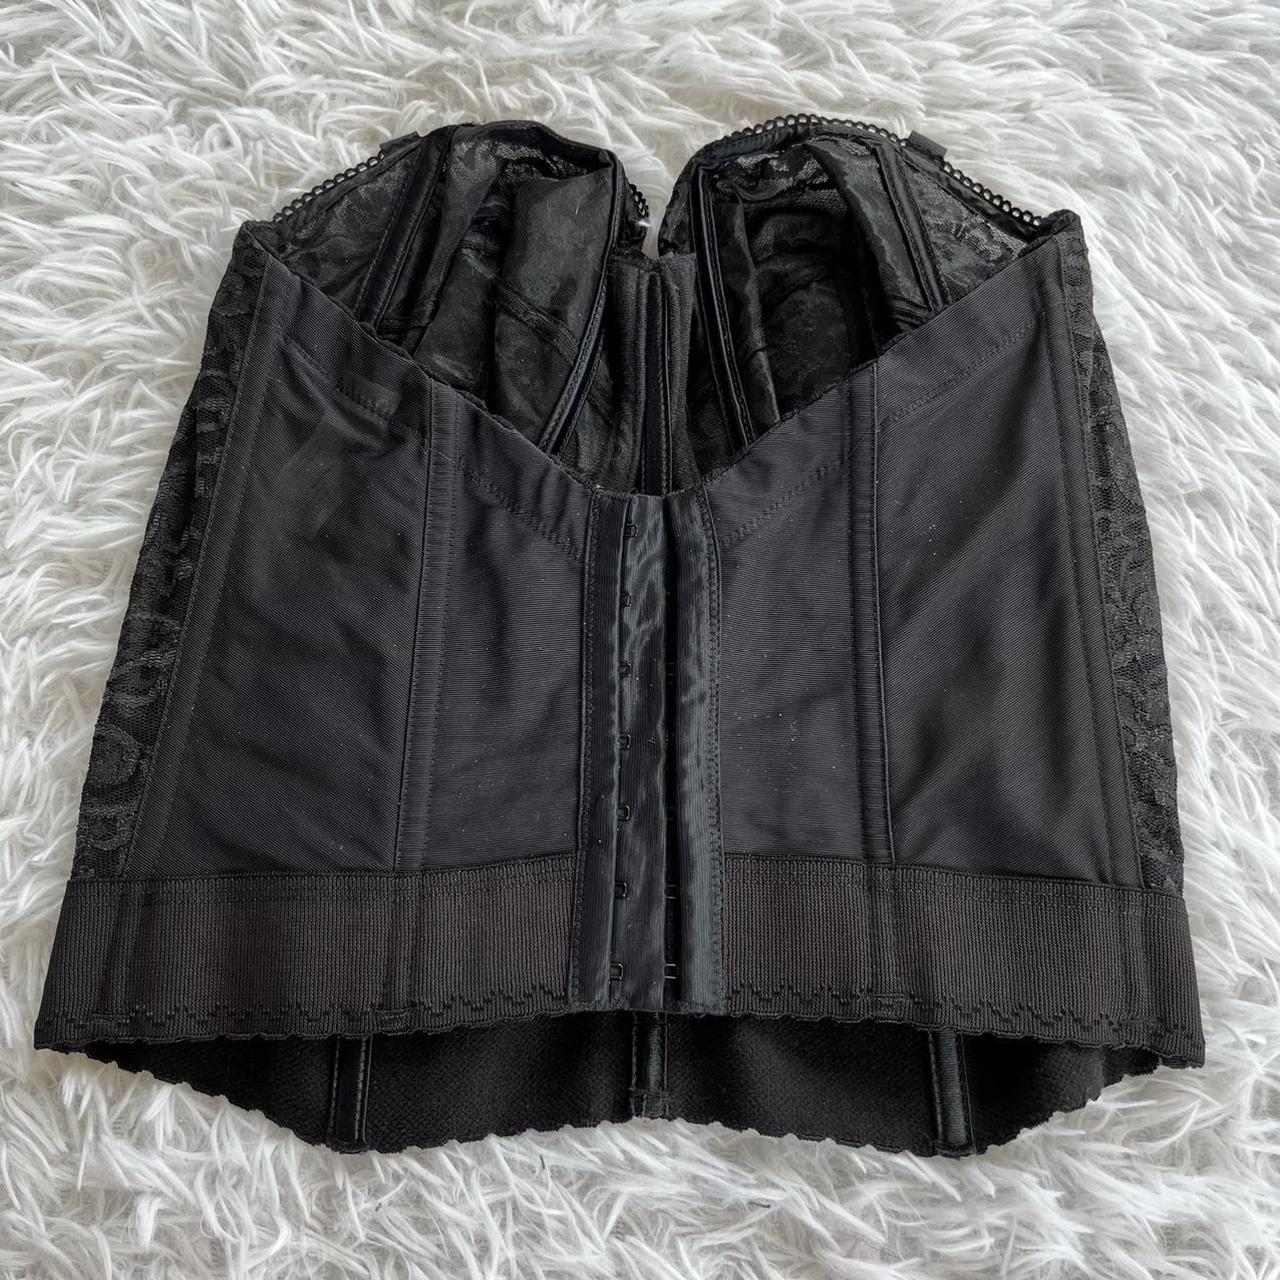 Product Image 2 - black lace detail corset size